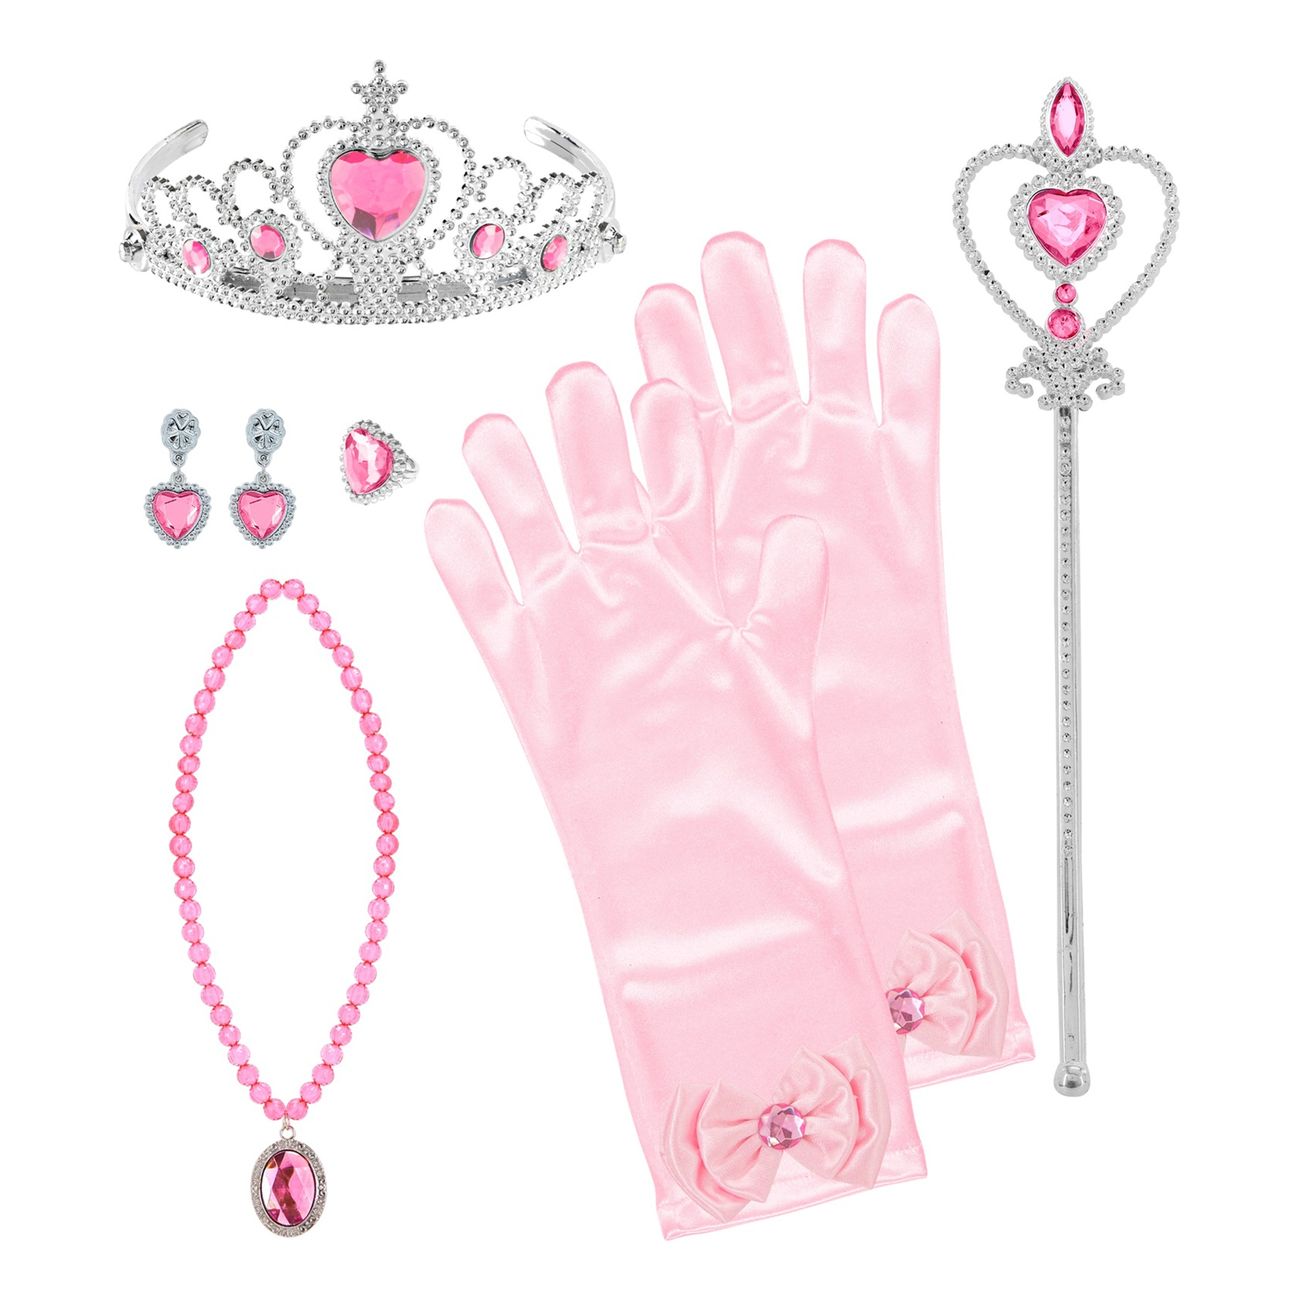 prinsessa-tillbehorskit-rosa-for-barn-100414-1